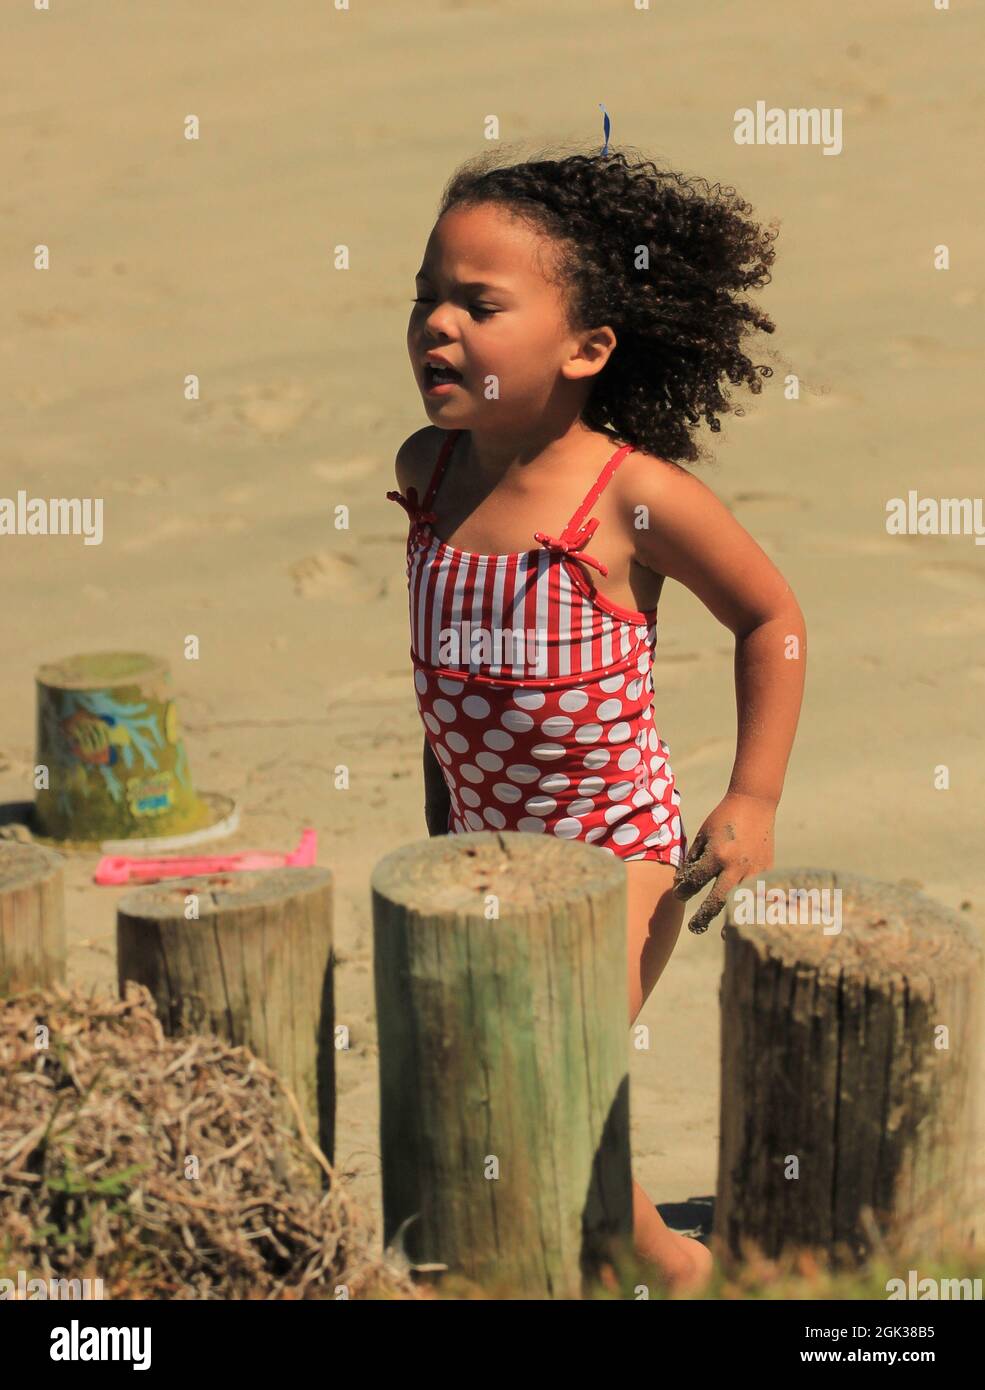 Carina ragazza africana con capelli ricci che giocano su una spiaggia Foto Stock